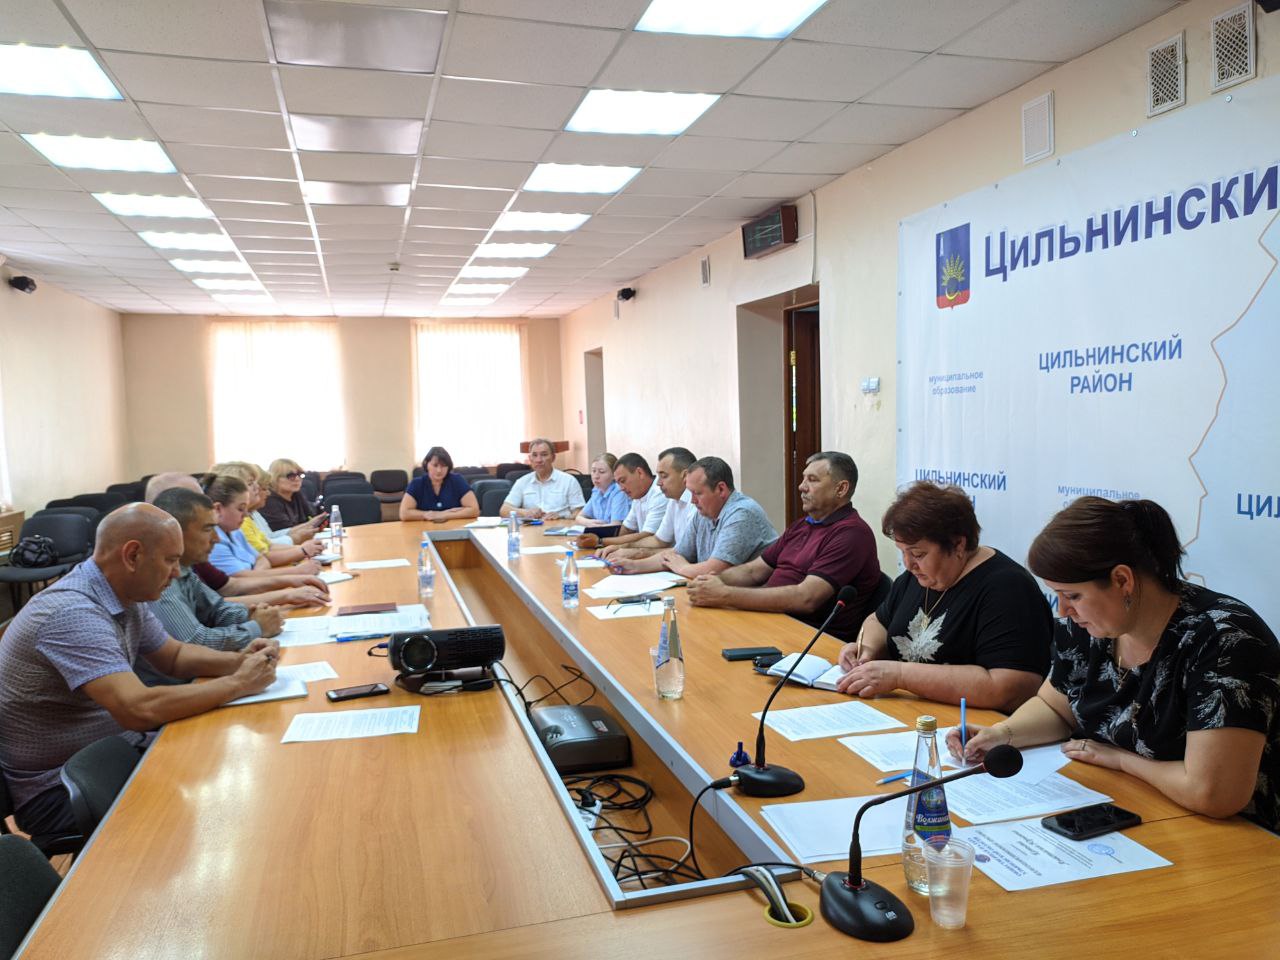 В администрации прошло очередное заседание Общественной палаты Цильнинского района .